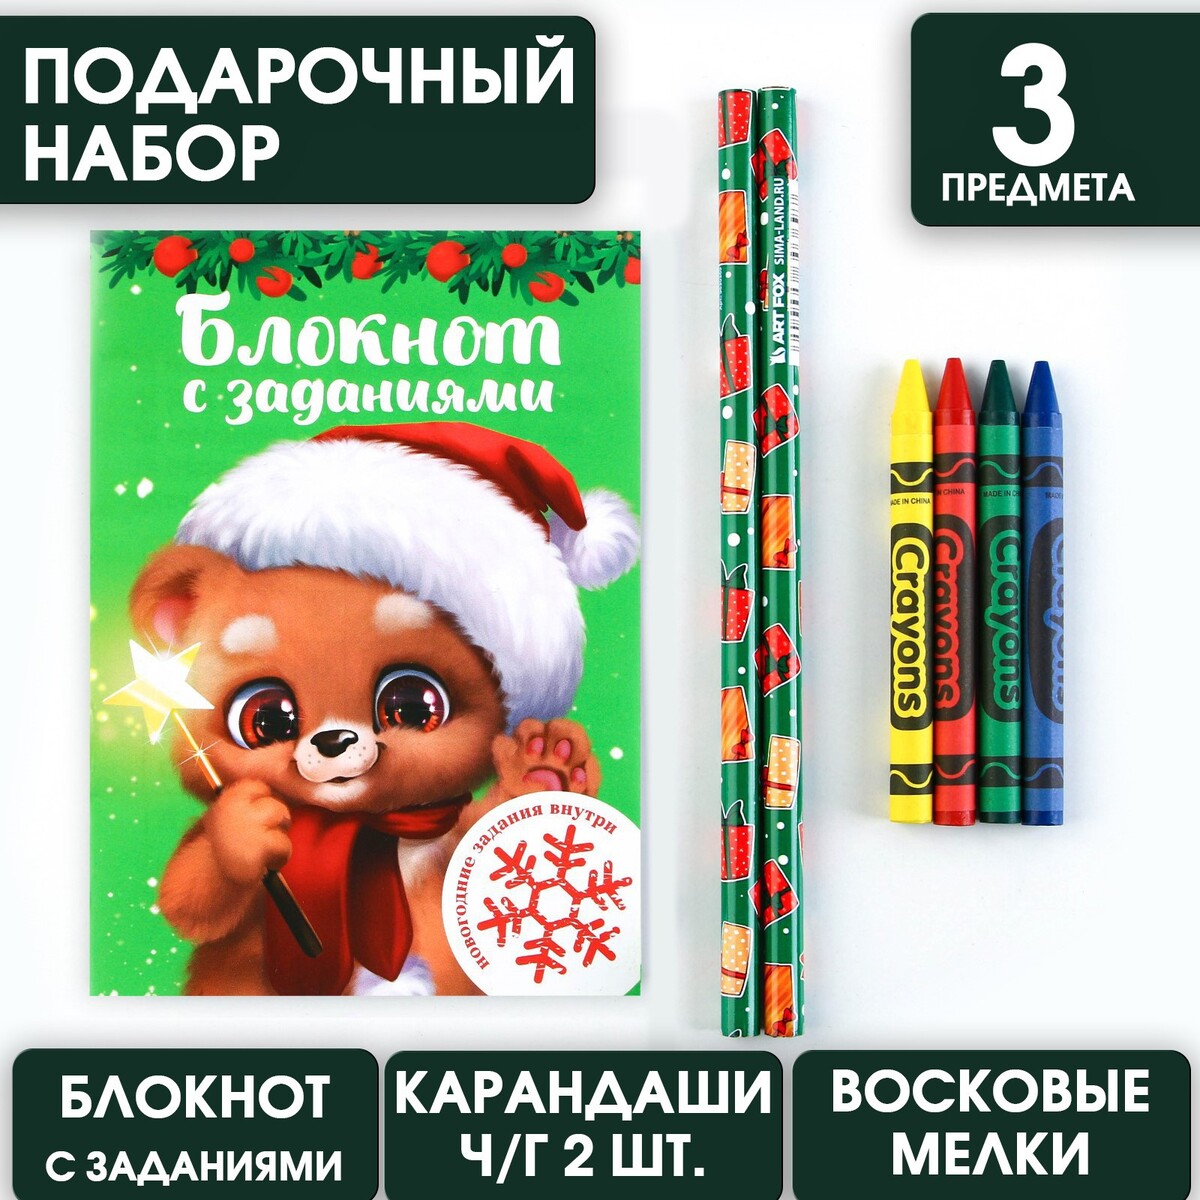 Подарочный новогодний набор: блокнот, карандаши ч/г 2 шт и восковые мелки